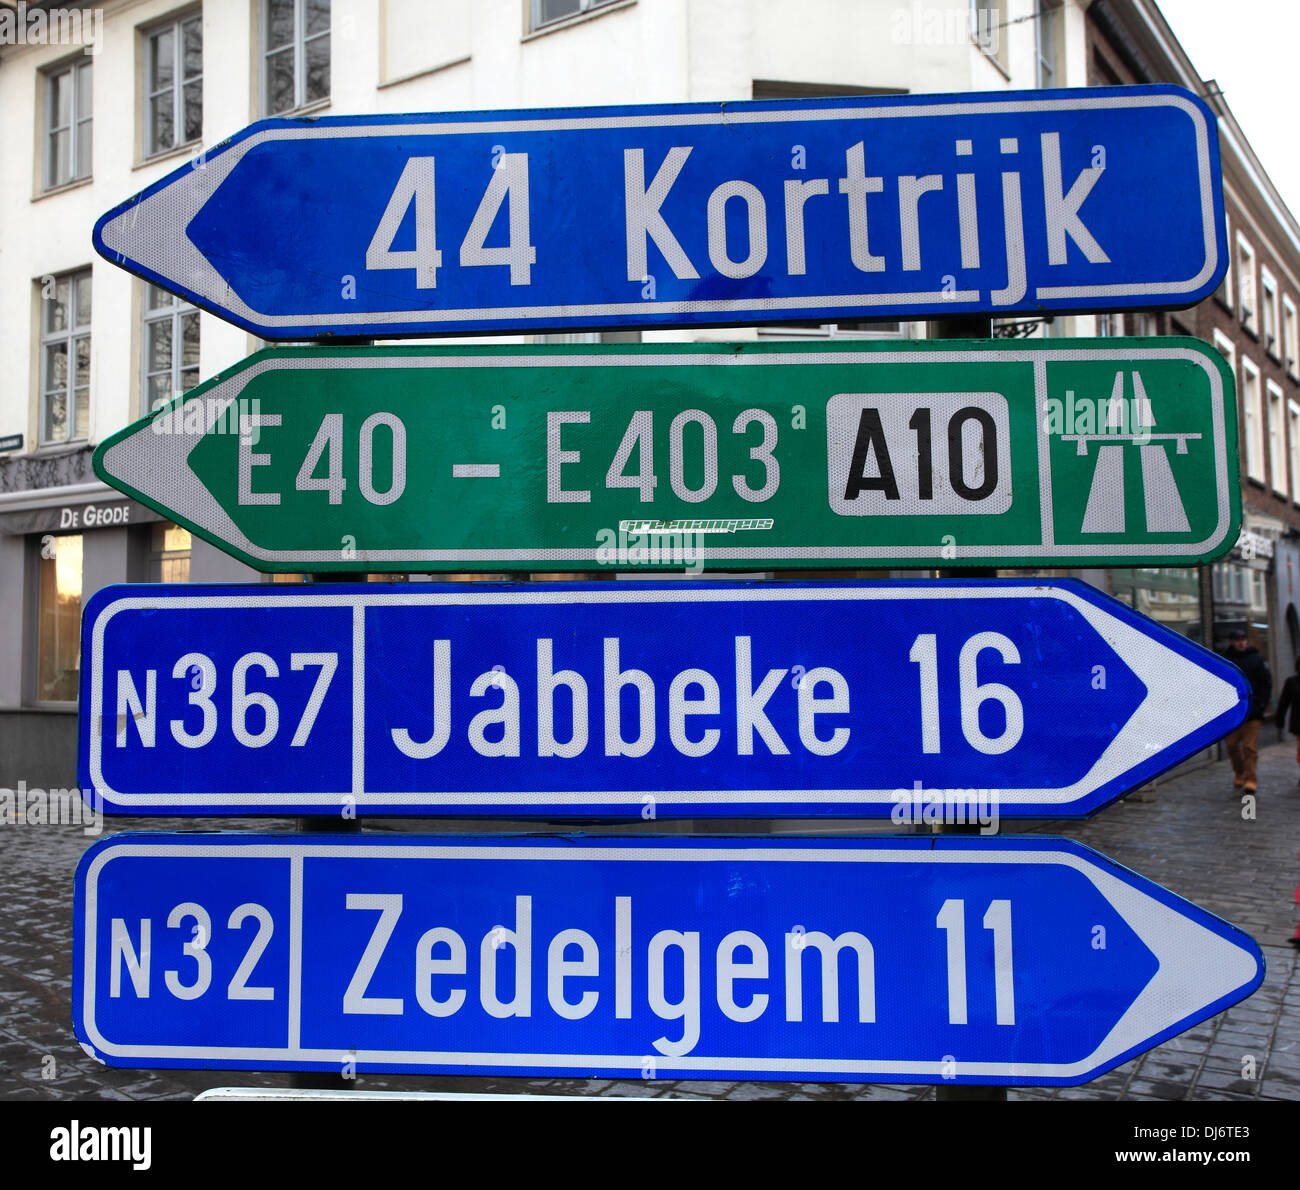 Signe de route, la ville de Bruges, Flandre occidentale, région flamande de Belgique. Bruges est une ville du patrimoine mondial de l'UNESCO. Banque D'Images